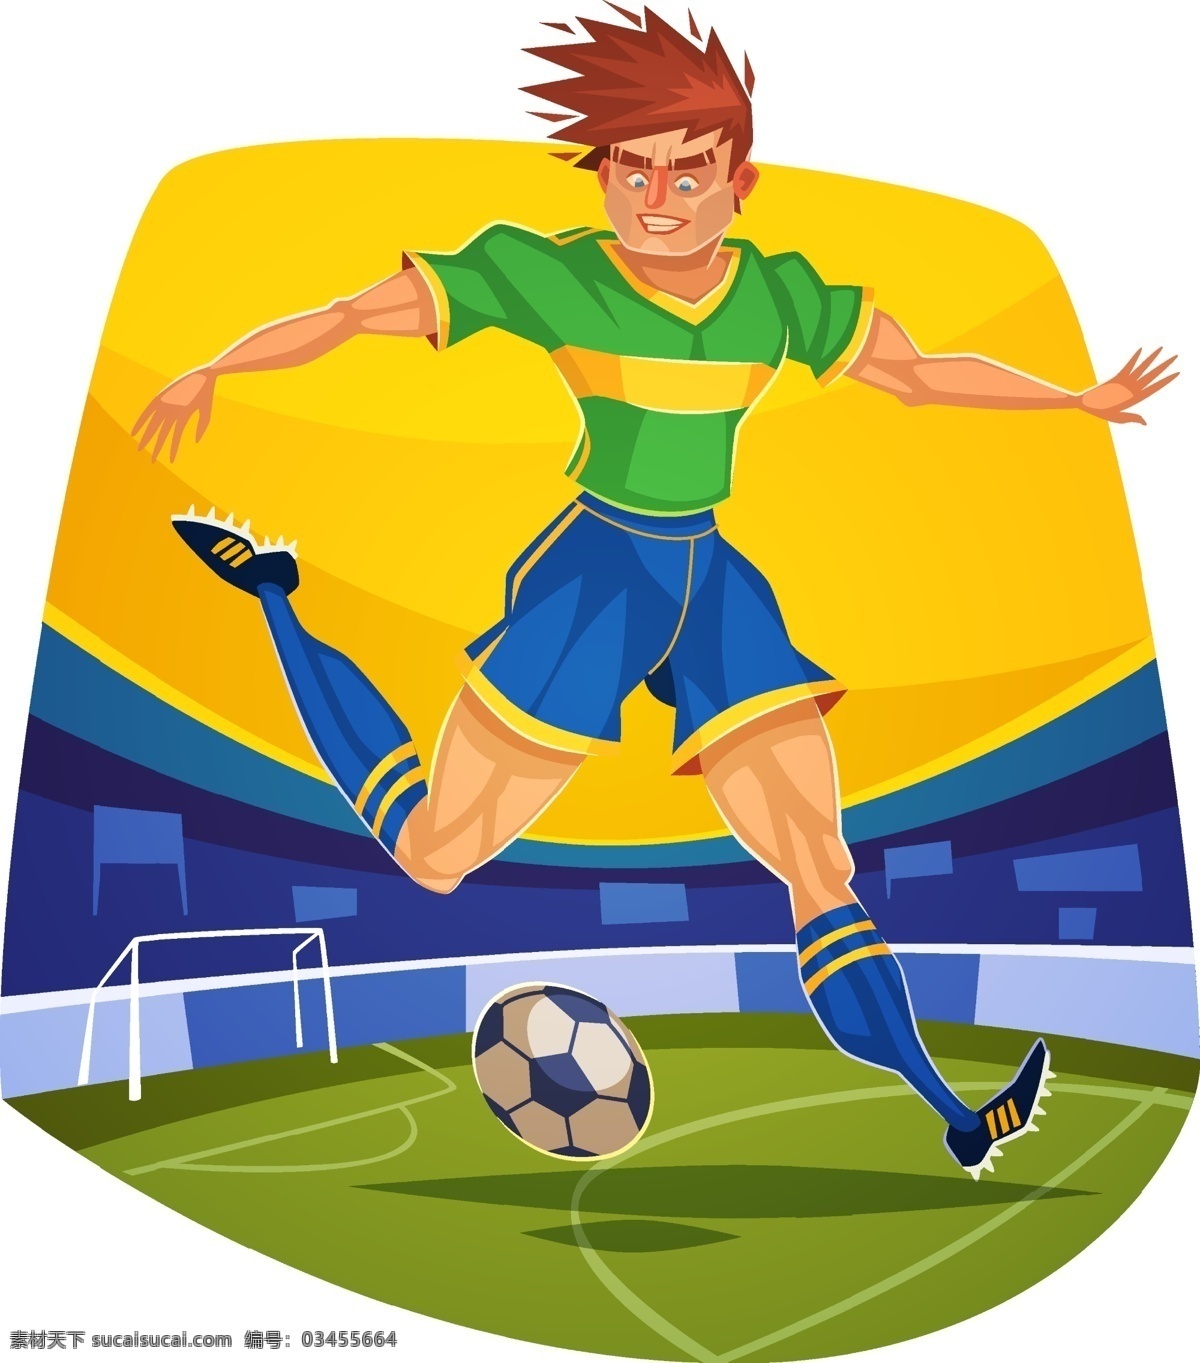 2014 巴西 足球 世界杯 体育项目 足球元素 足球比赛 足球设计 体育 体育设计 欧洲杯 足球运动 体育比赛 巴西世界杯 足球世界杯 体育运动 足球广告 文化艺术